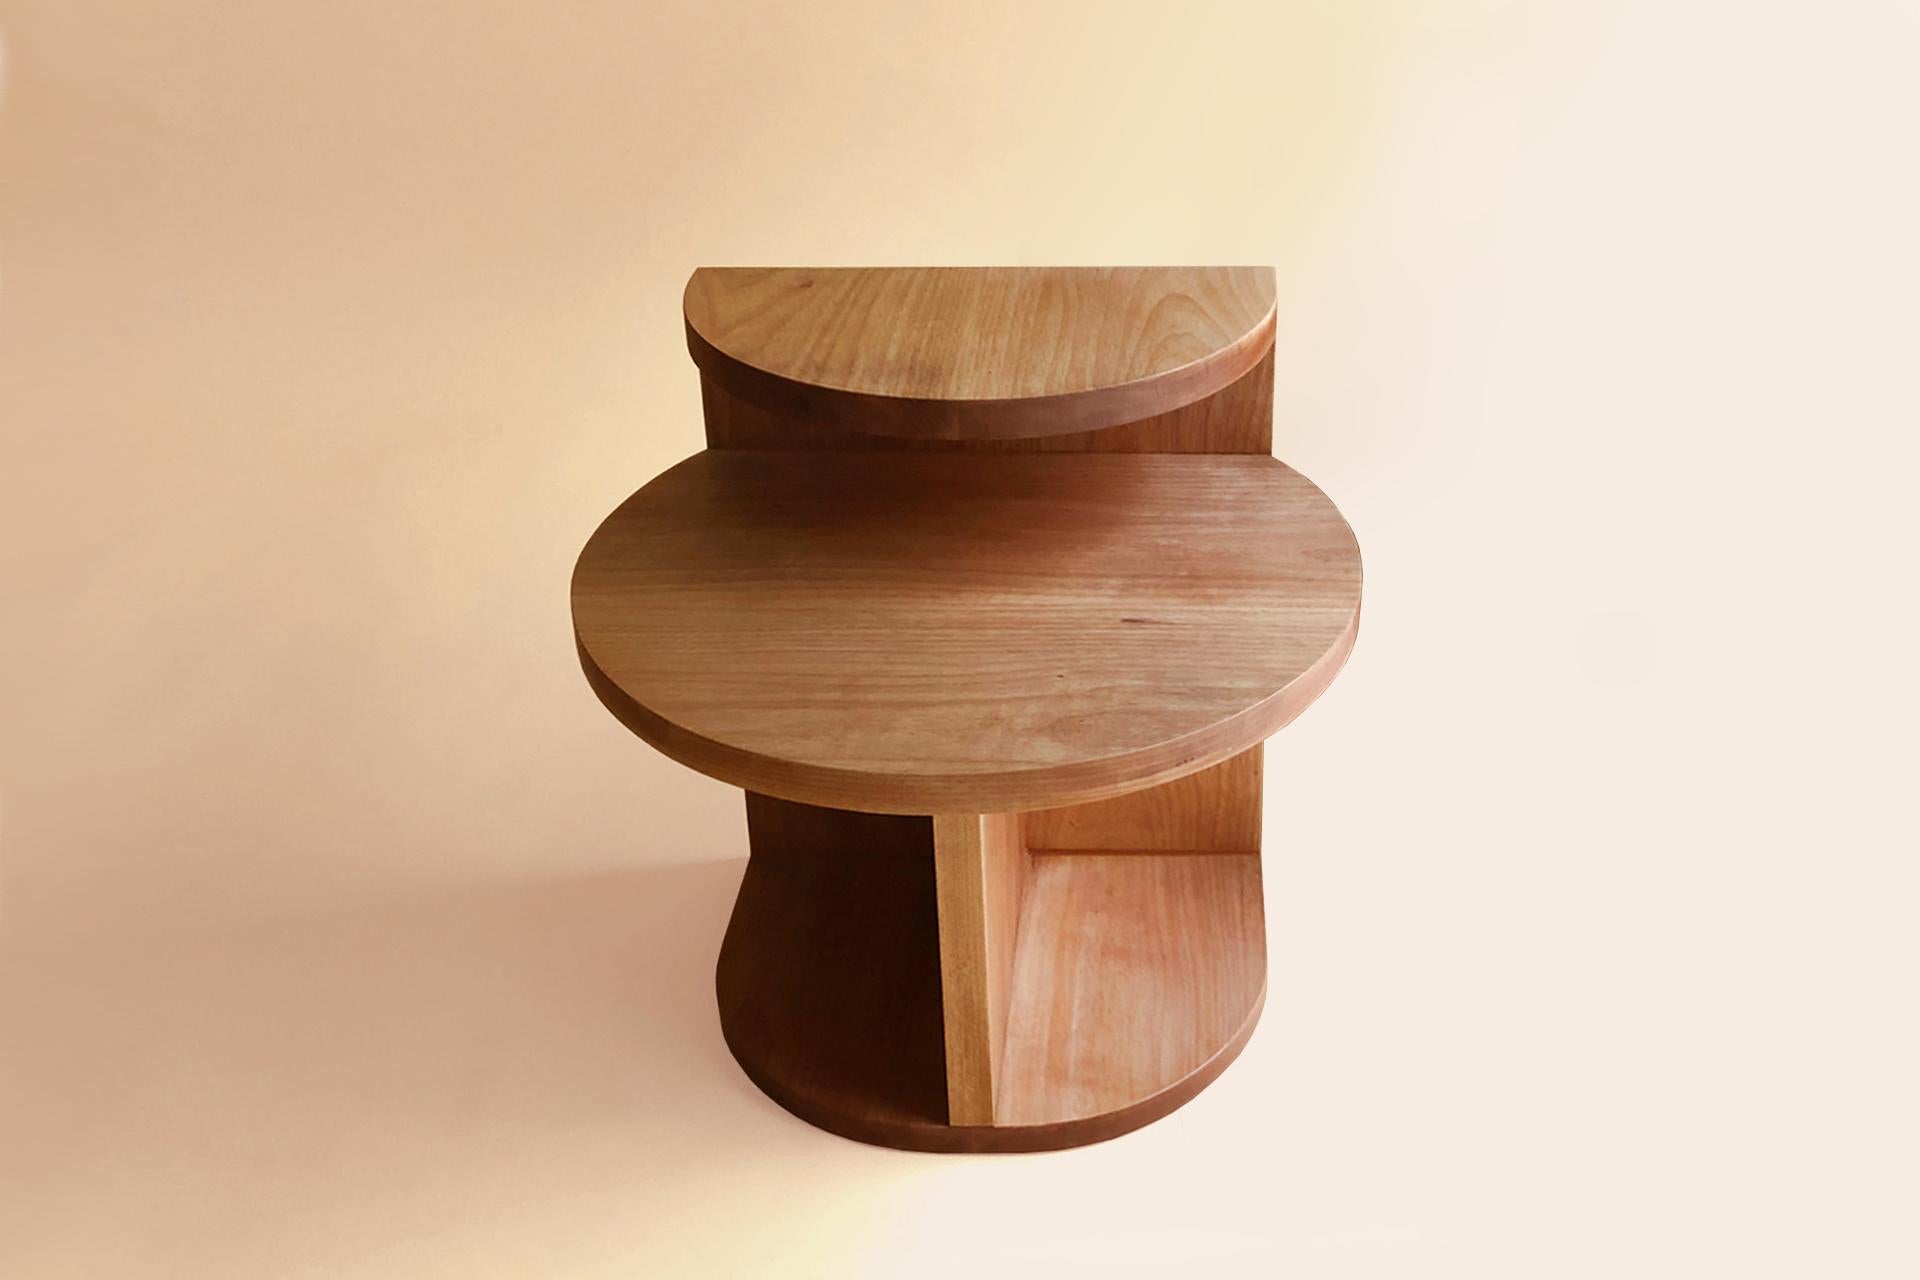 Der Café-Beistelltisch hat einfache geometrische Formen. Sein modernes Design mit zwei kreisförmigen Platten und zwei Höhenstufen machen den Tisch zu einem vielseitigen Möbelstück, das als Couchtisch oder Beistelltisch verwendet werden kann; auch in